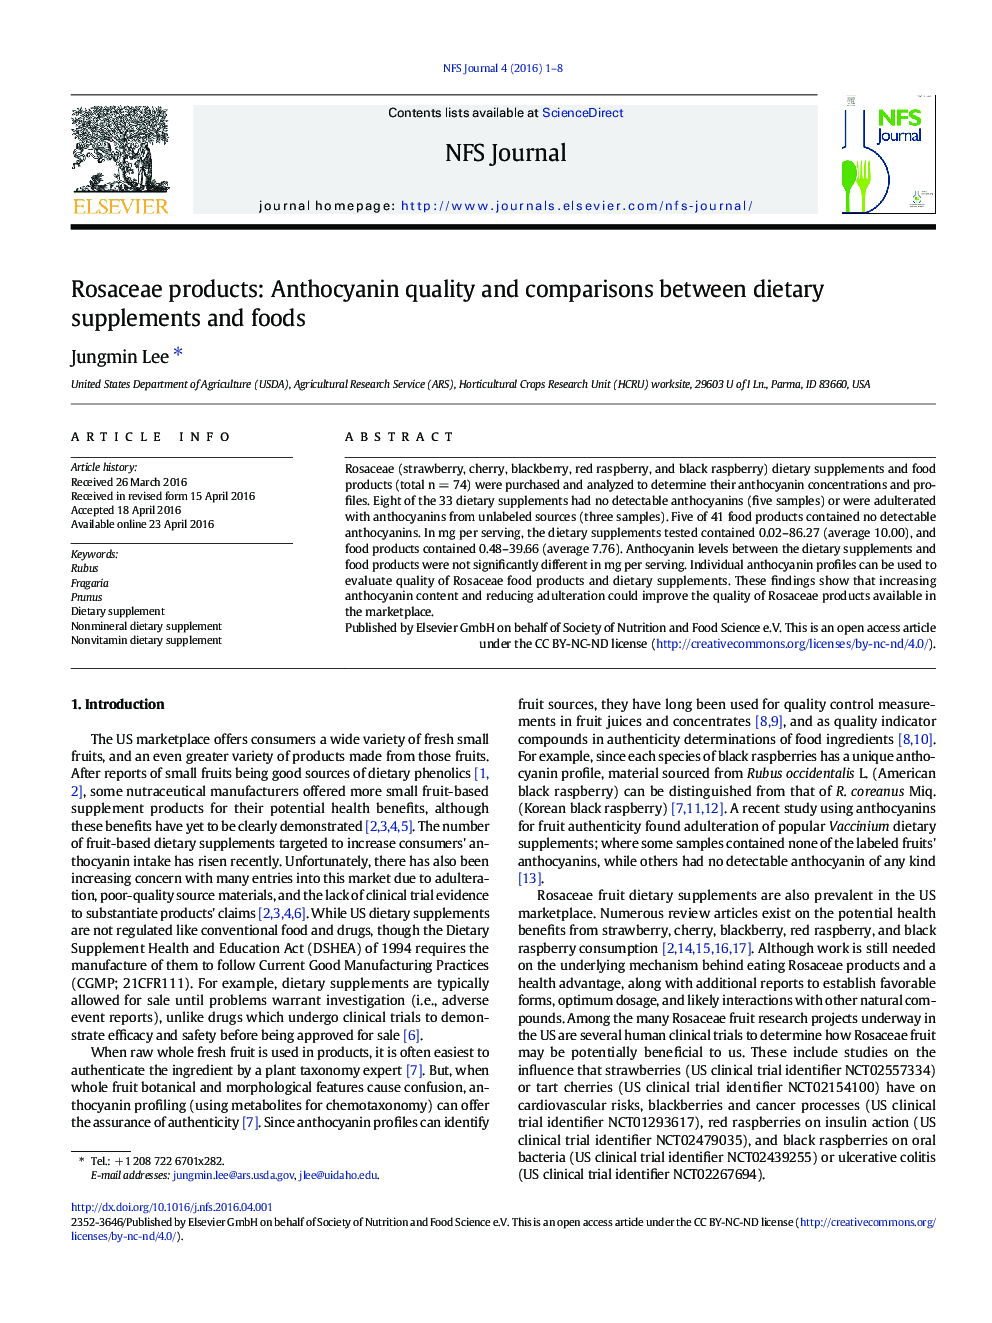 فرآورده های رزاسه: کیفیت آنتوسیانین و مقایسه بین مکمل های غذایی و غذاها